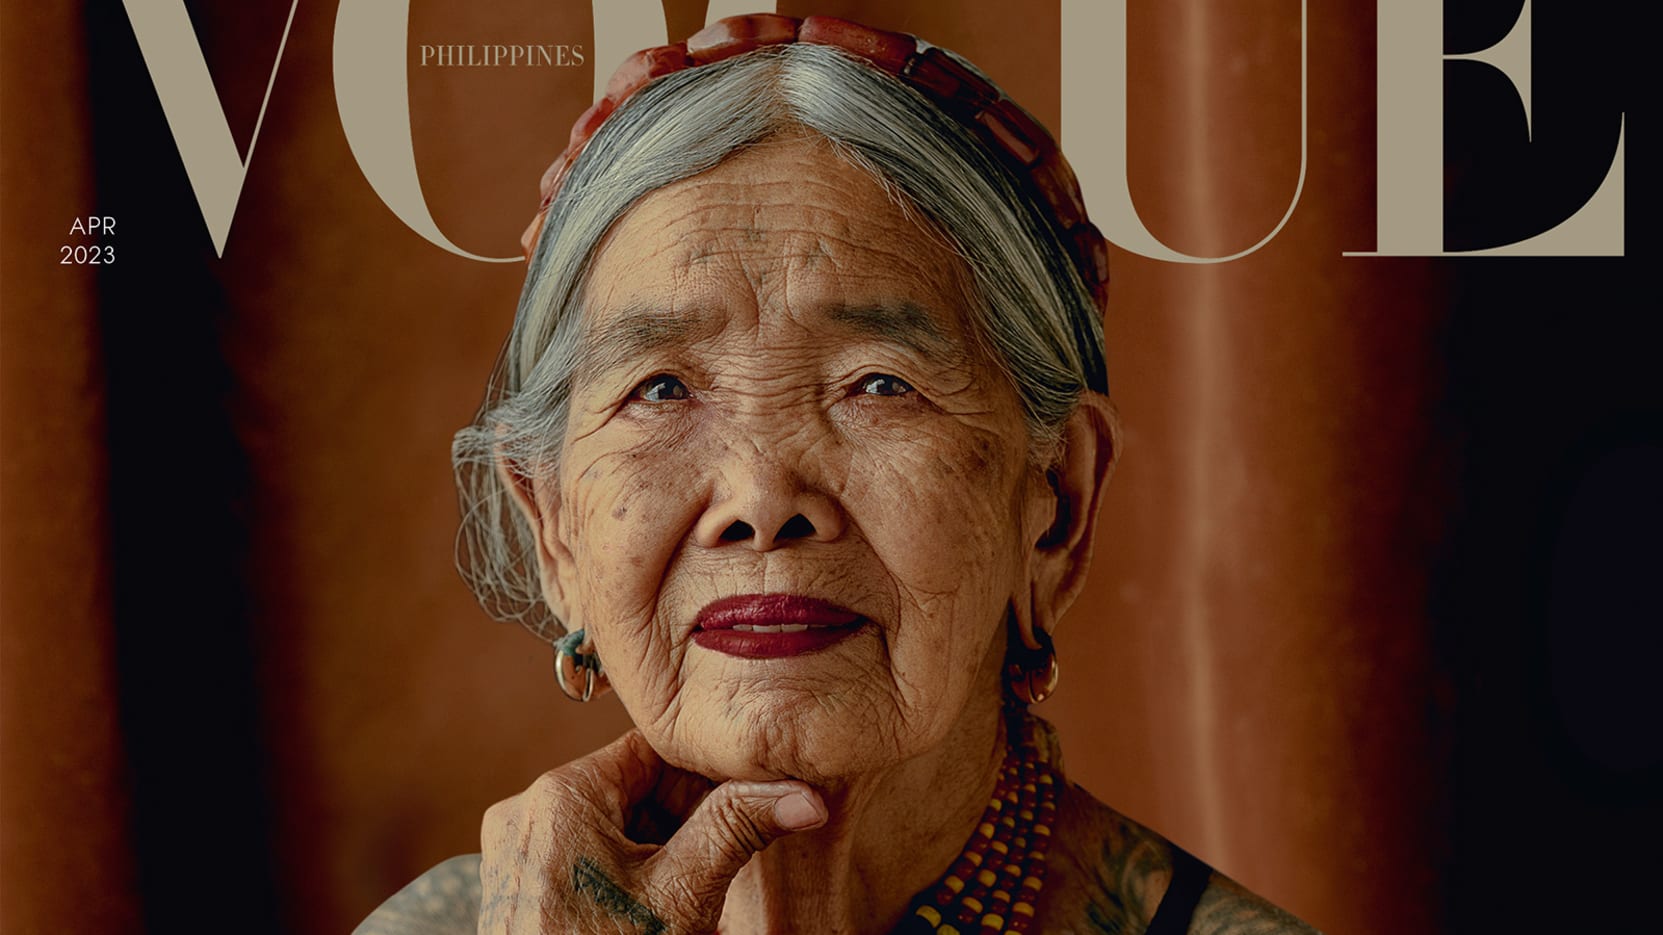 106-vjeçarja nga Filipinet bëhet modelja më e vjetër e “Vogue”